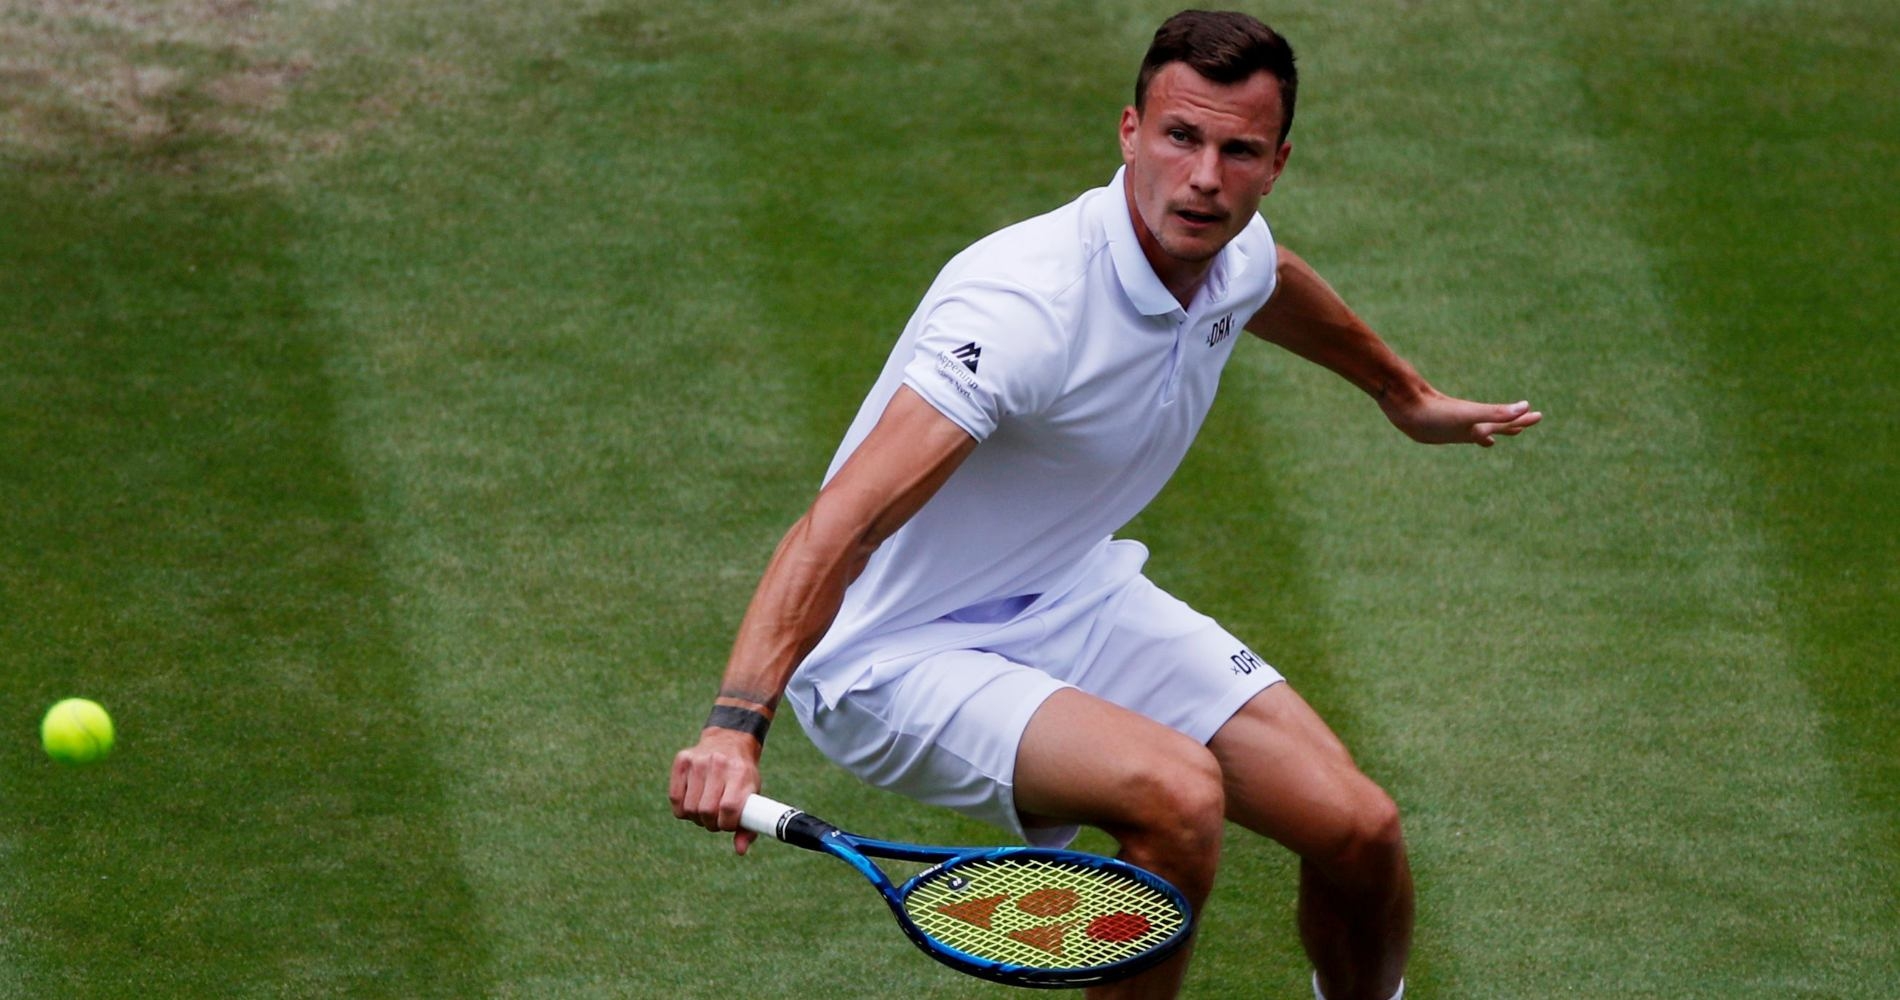 Tennis, ATP – Wimbledon 2023: Fucsovics downs Giron - Tennis Majors